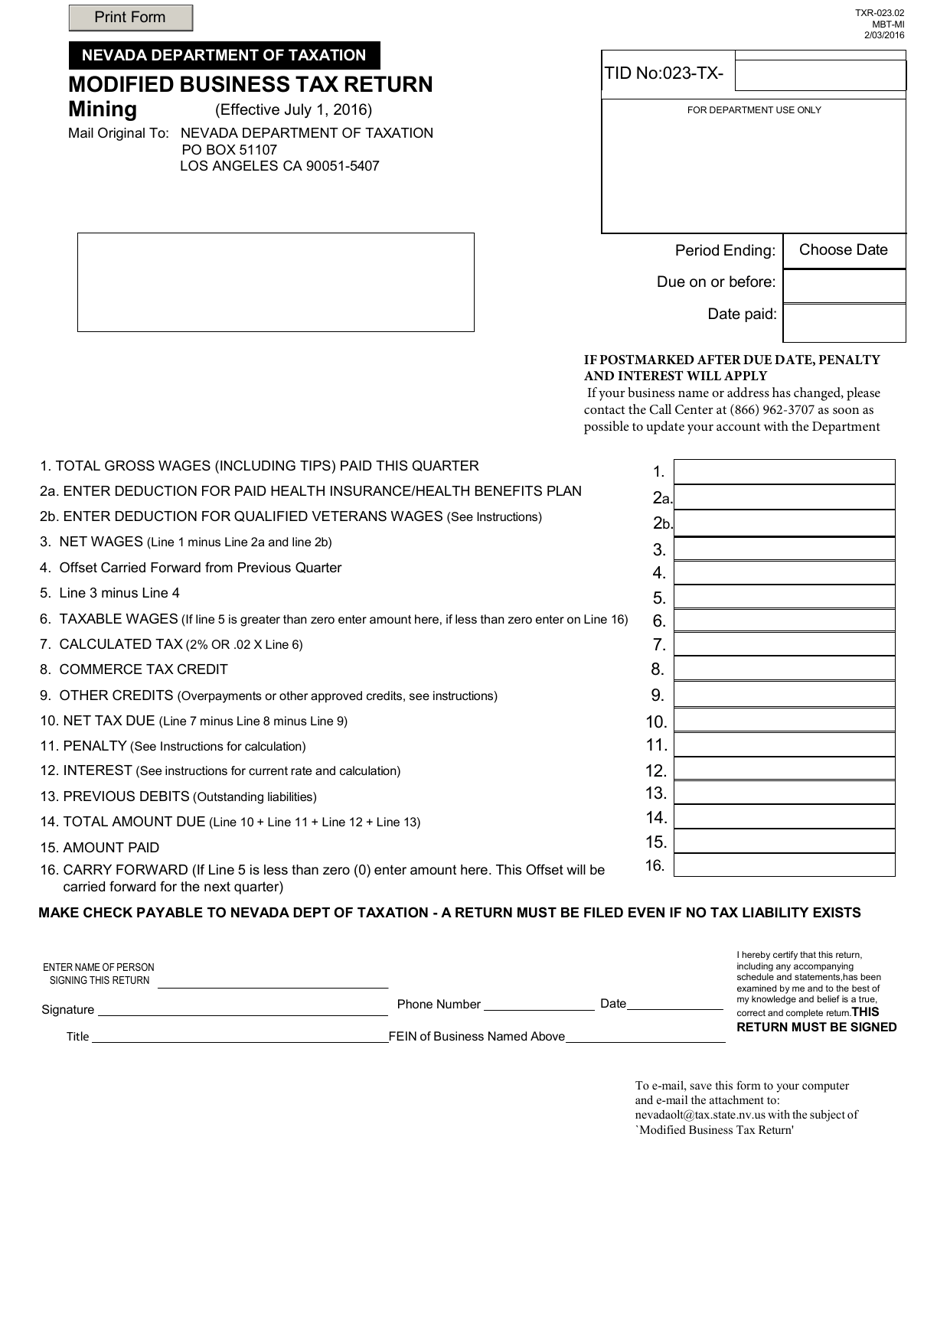 Form TXR-023.02 Modified Business Tax Return - Mining - Nevada, Page 1